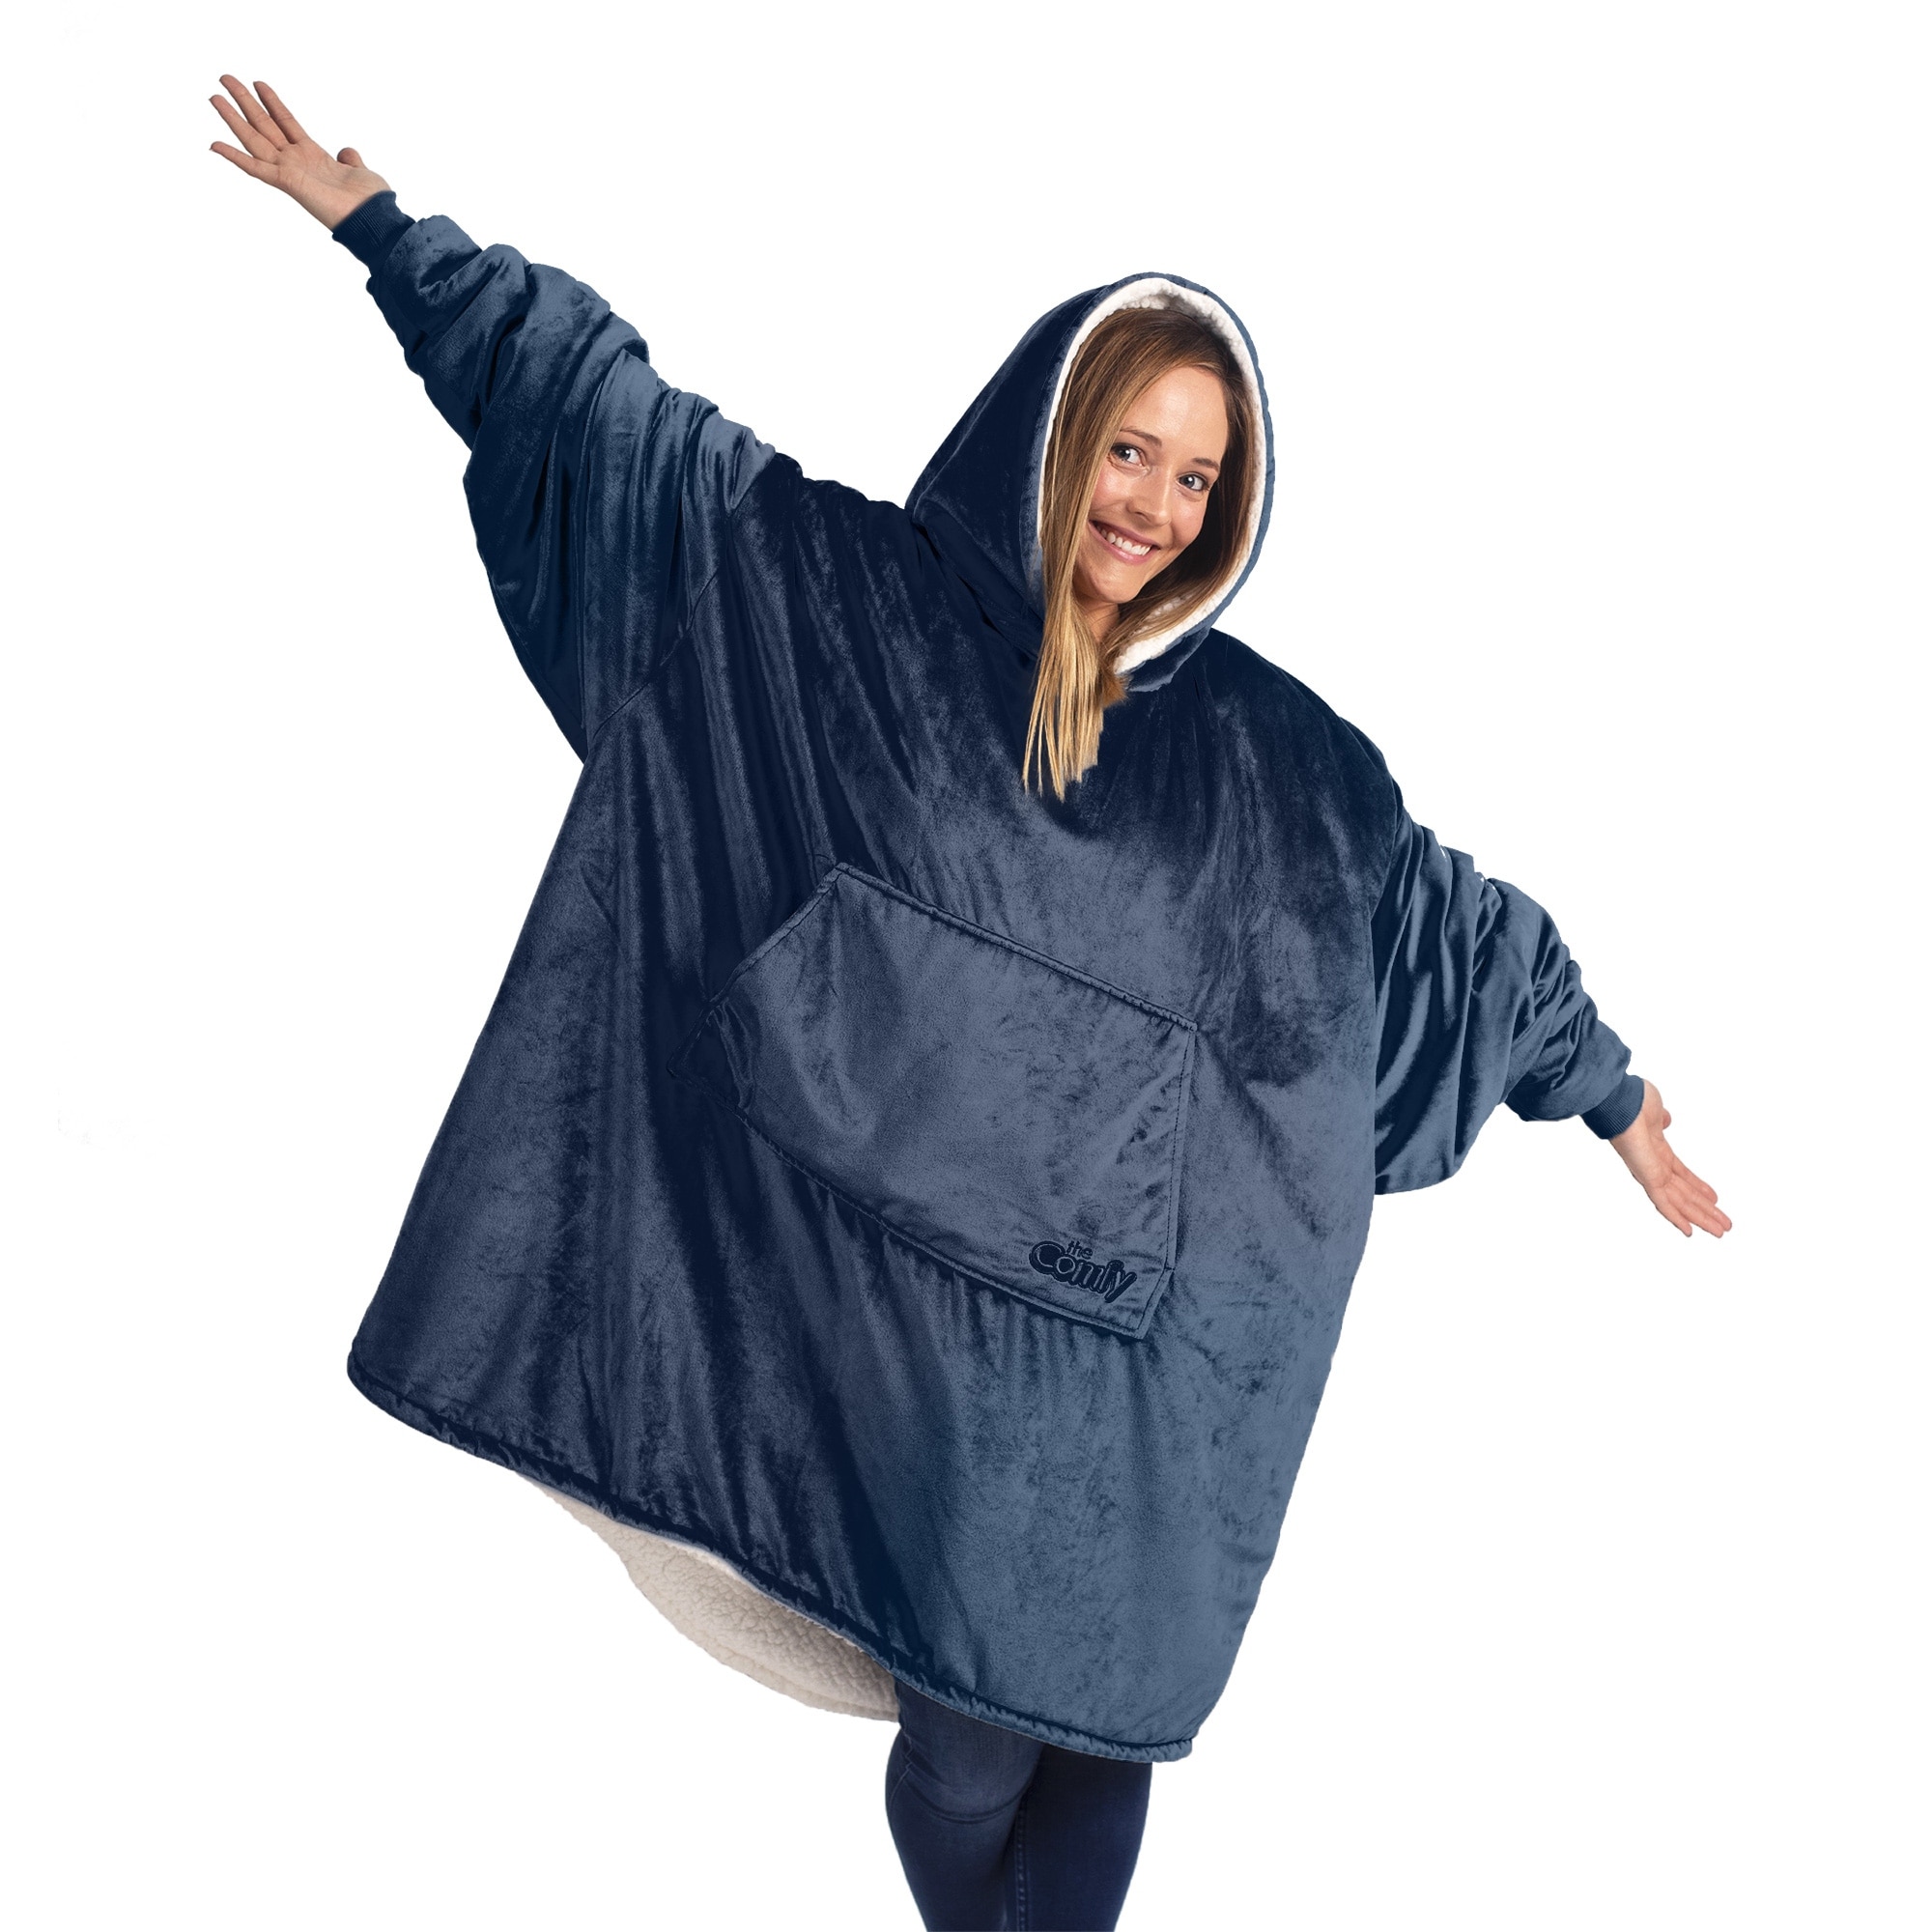 The Comfy Original Jr Wearable Blanket - Blue